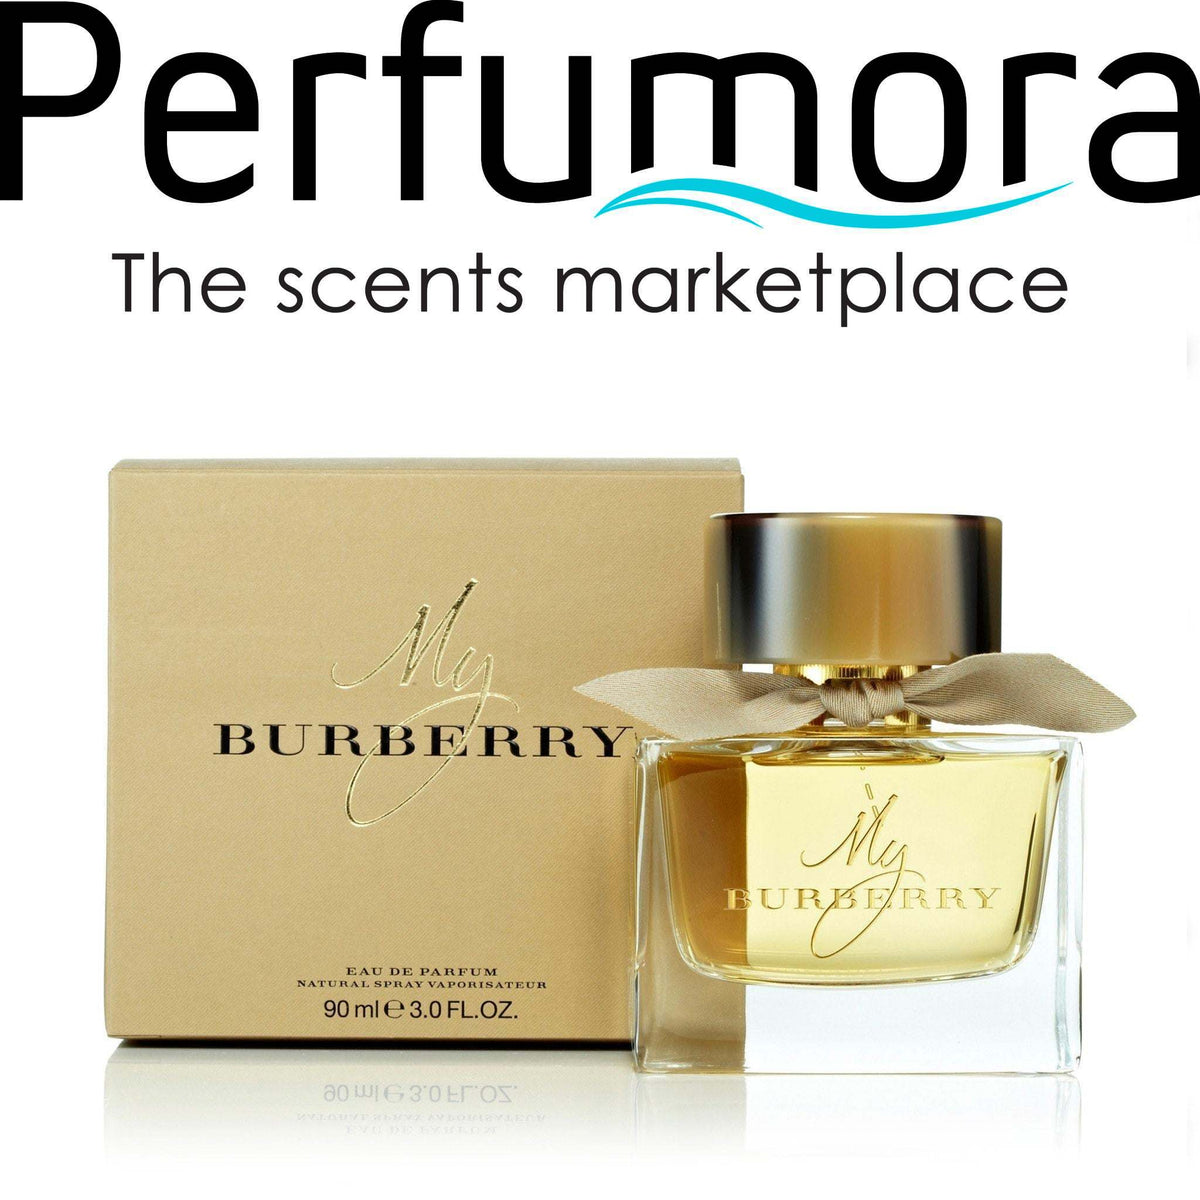 My Burberry For Women By Burberry Eau De Parfum Spray